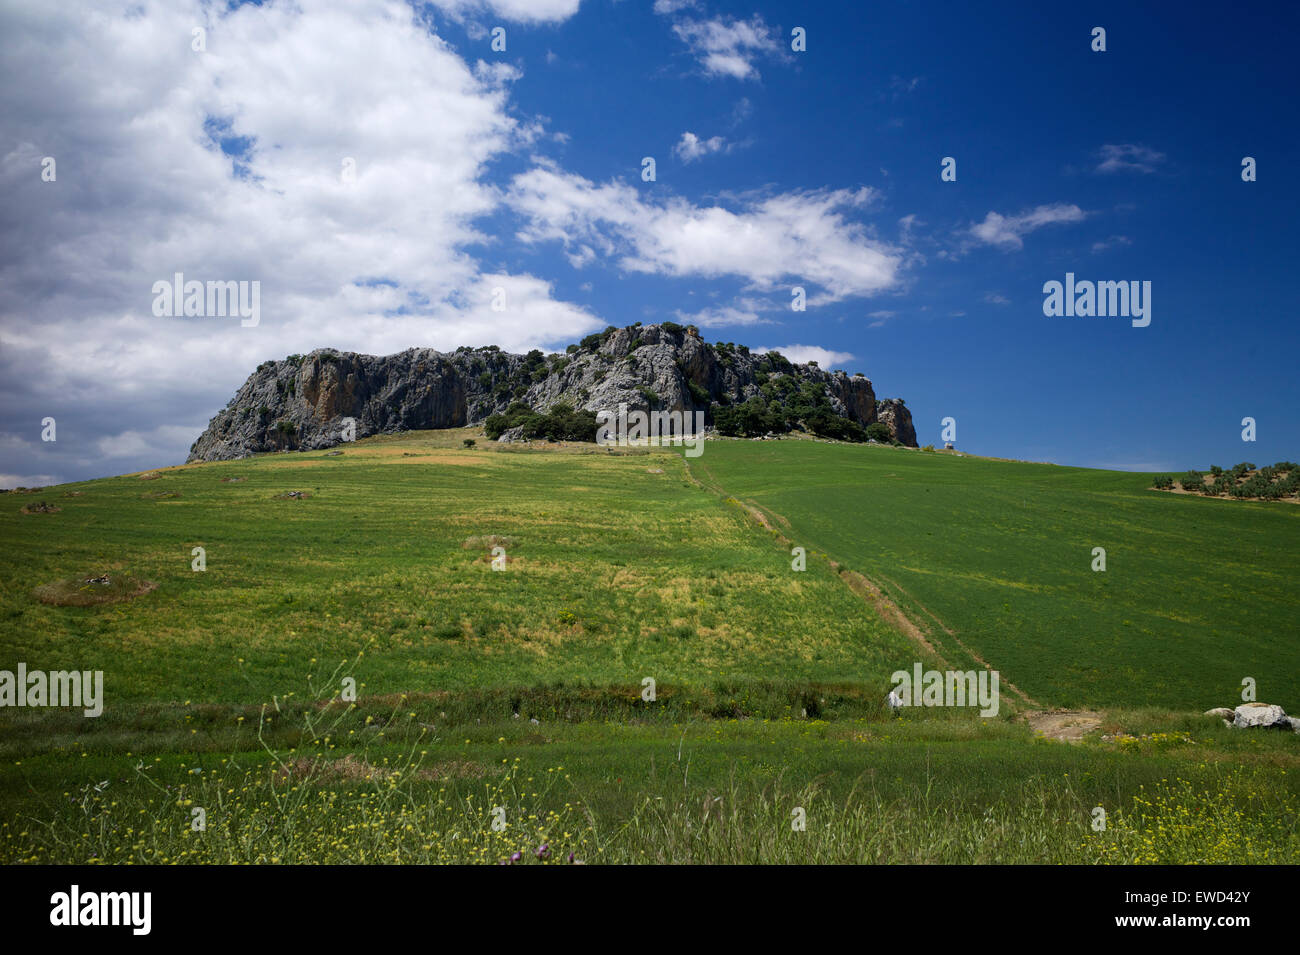 Rocky outcrop near Ronda, Andalucia, Spain Stock Photo